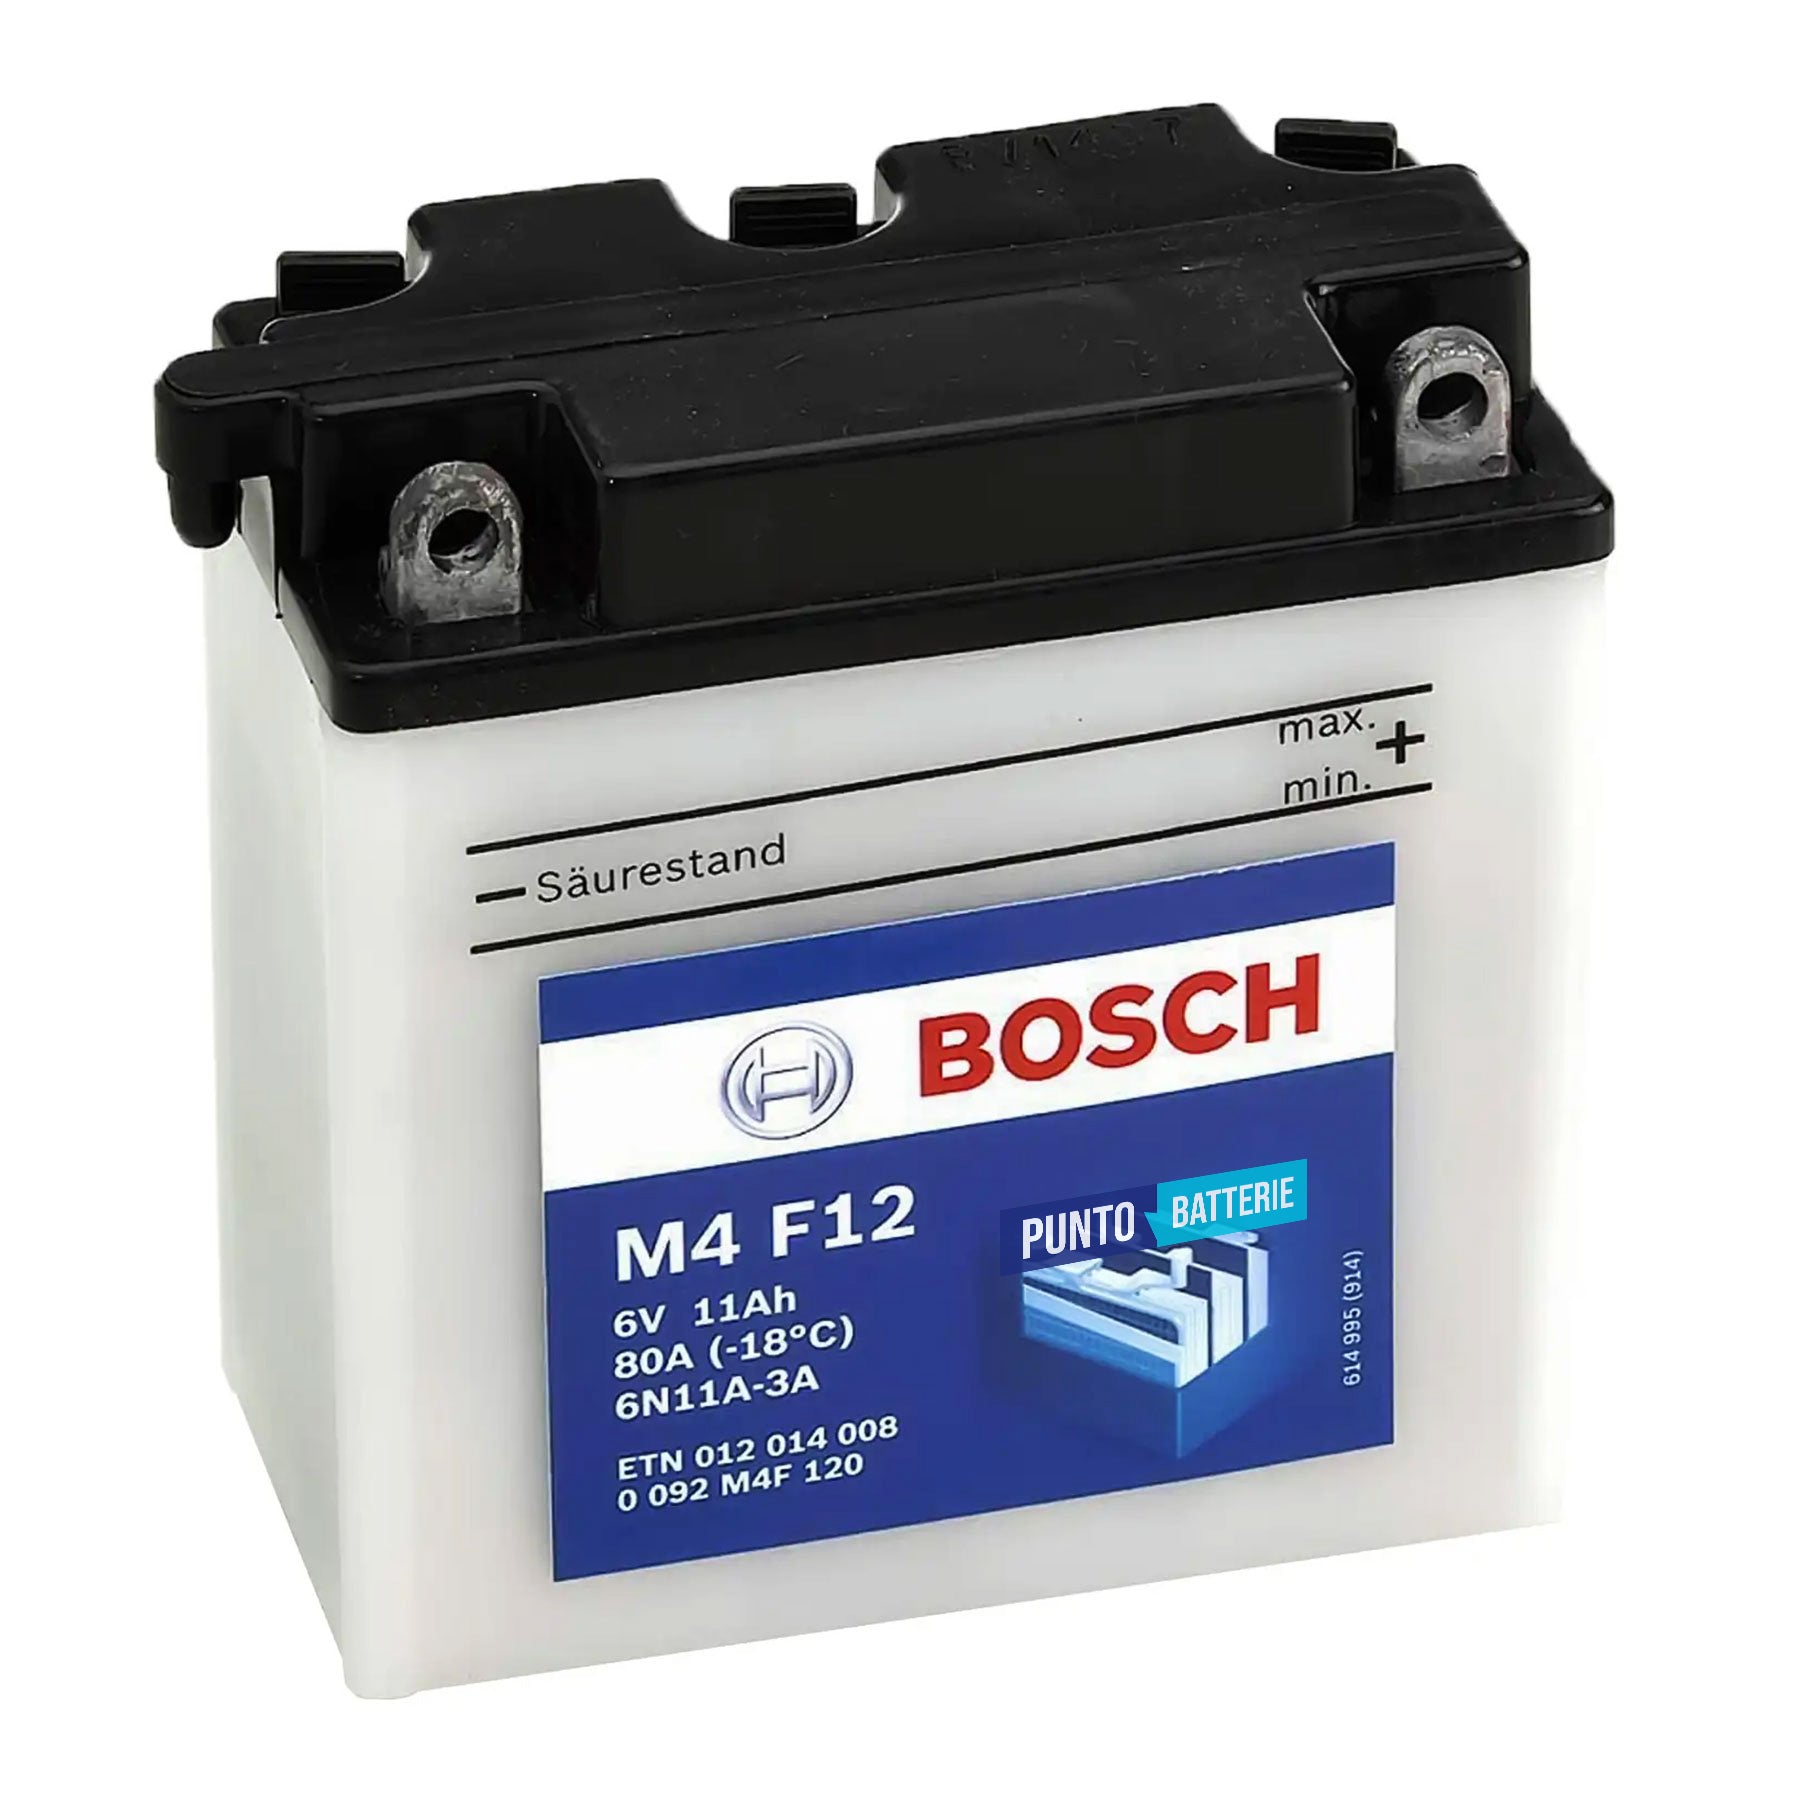 Batteria originale Bosch M4 M4F12, dimensioni 99 x 57 x 111, polo positivo a destra, 6 volt, 12 amperora, 80 ampere. Batteria per moto, scooter e powersport.